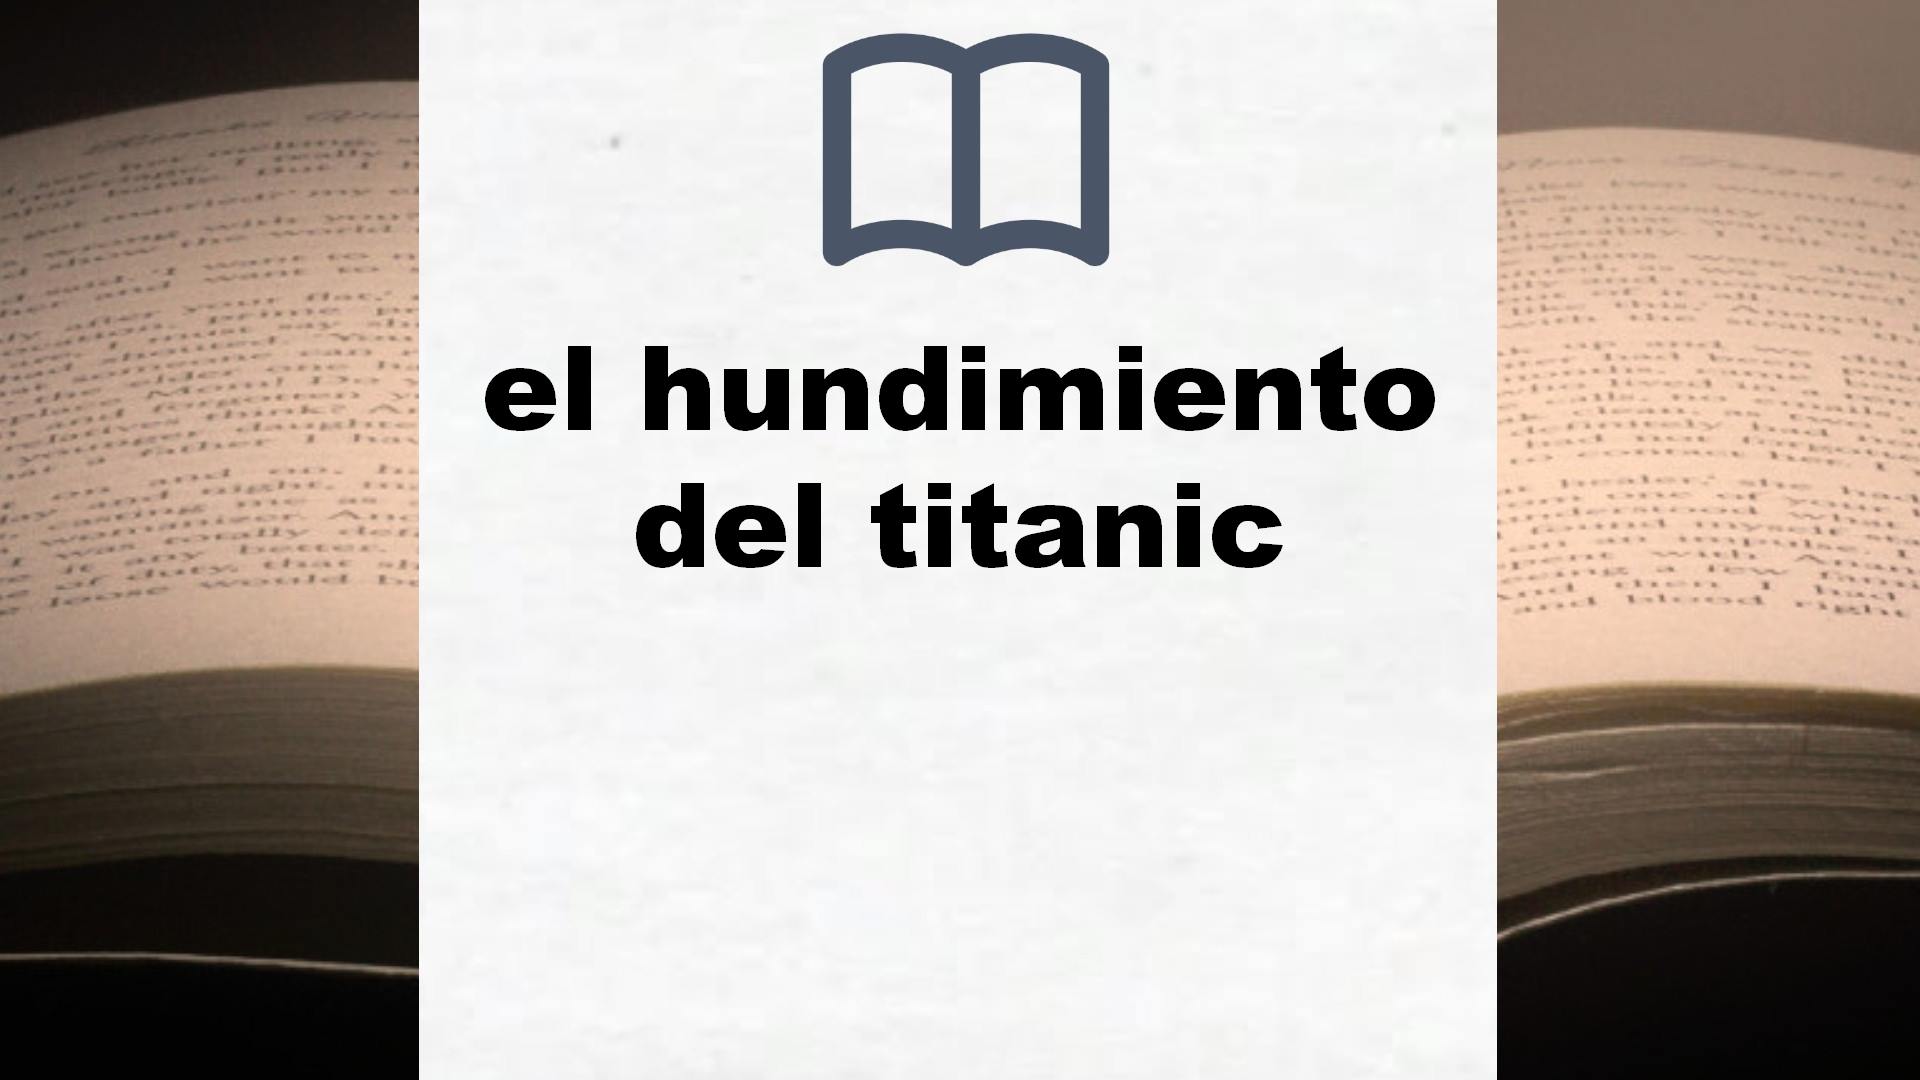 Libros sobre el hundimiento del titanic